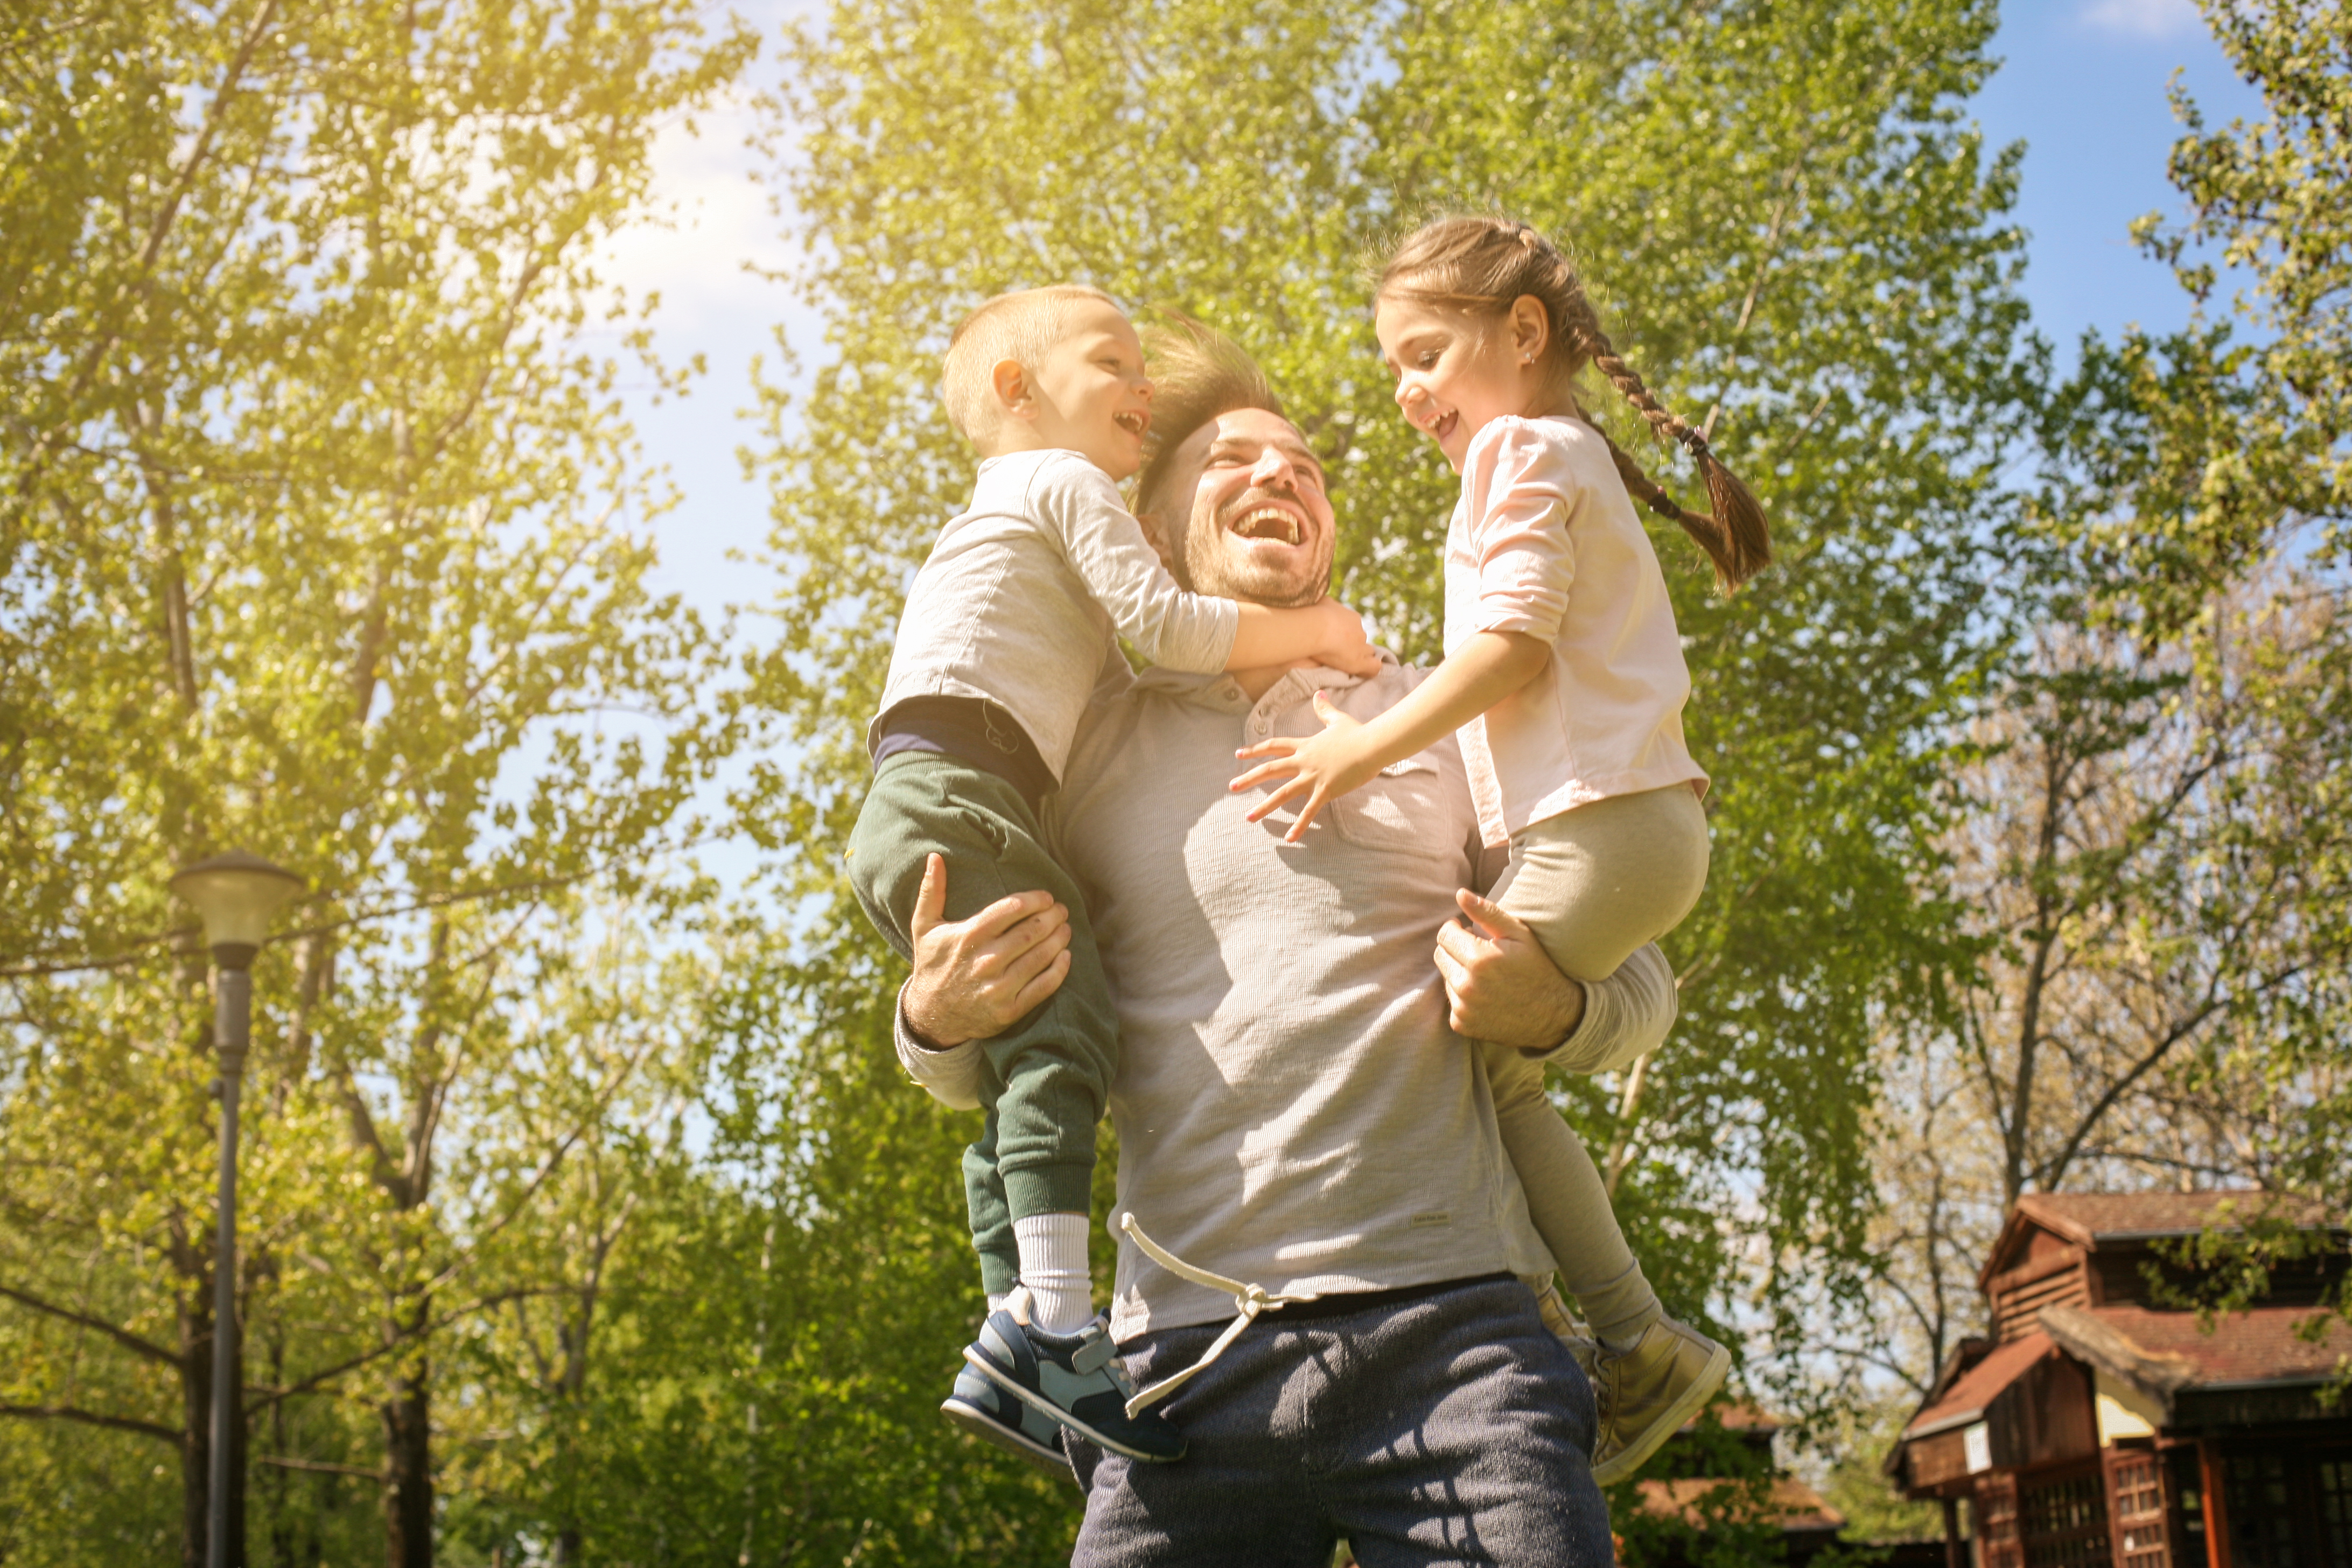 Un père joyeux qui joue avec ses enfants dans le pré | Source : Shutterstock